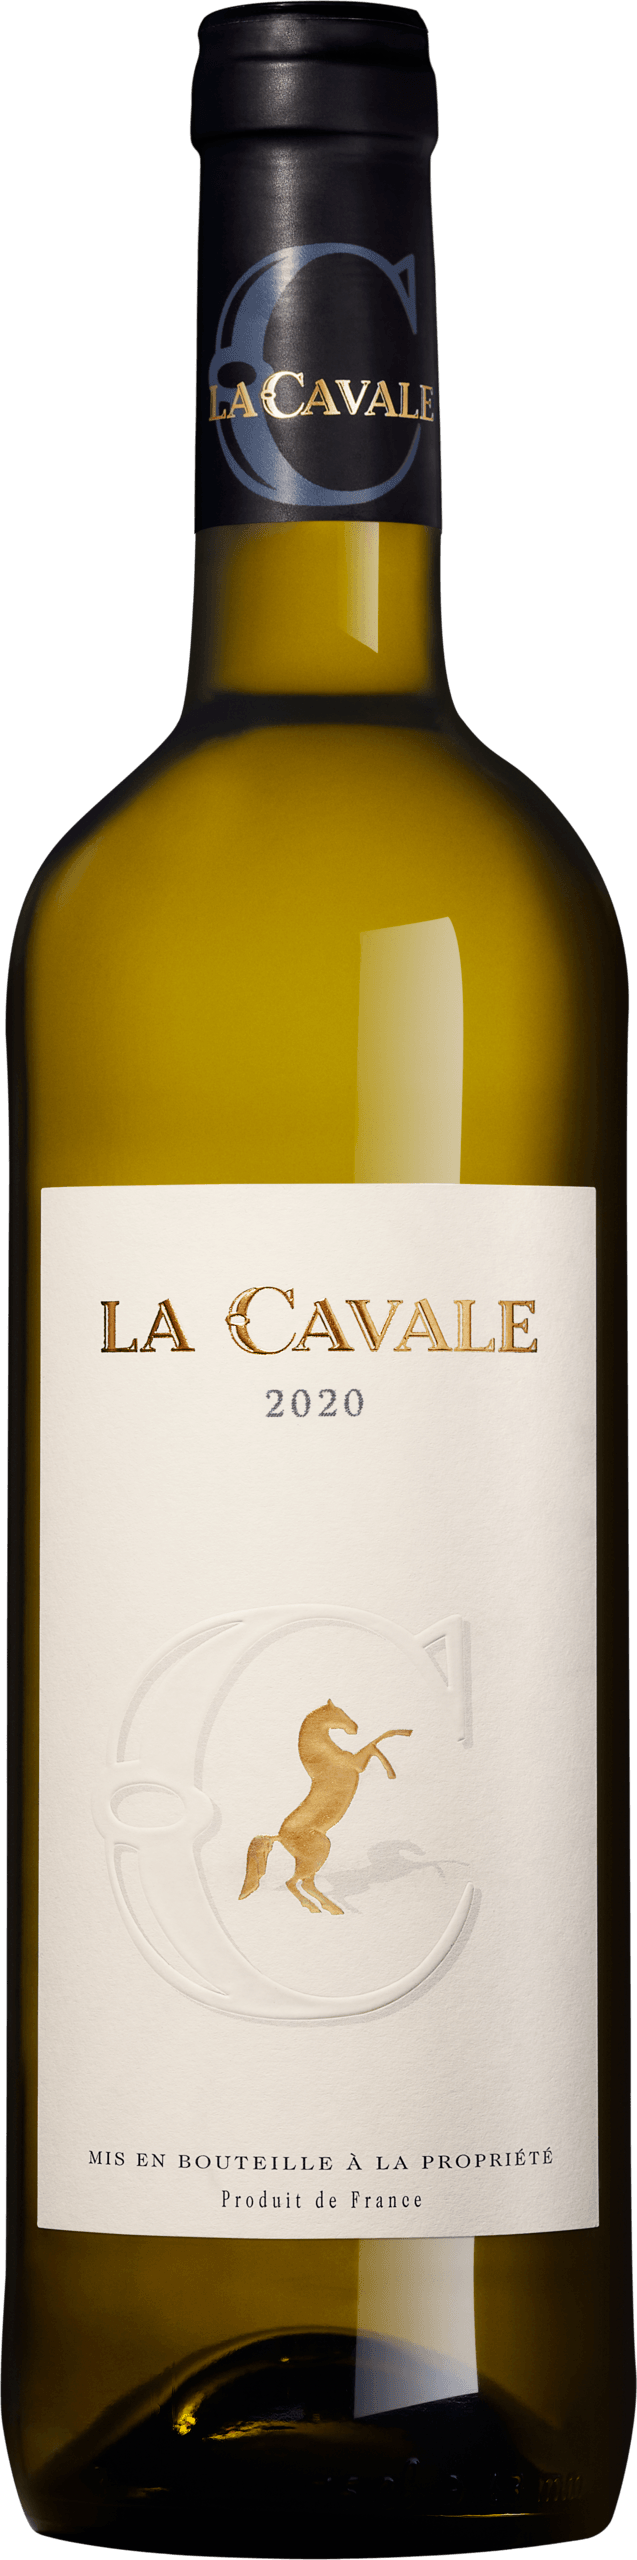 La Cavale blanc 2020 - Domaine La Cavale